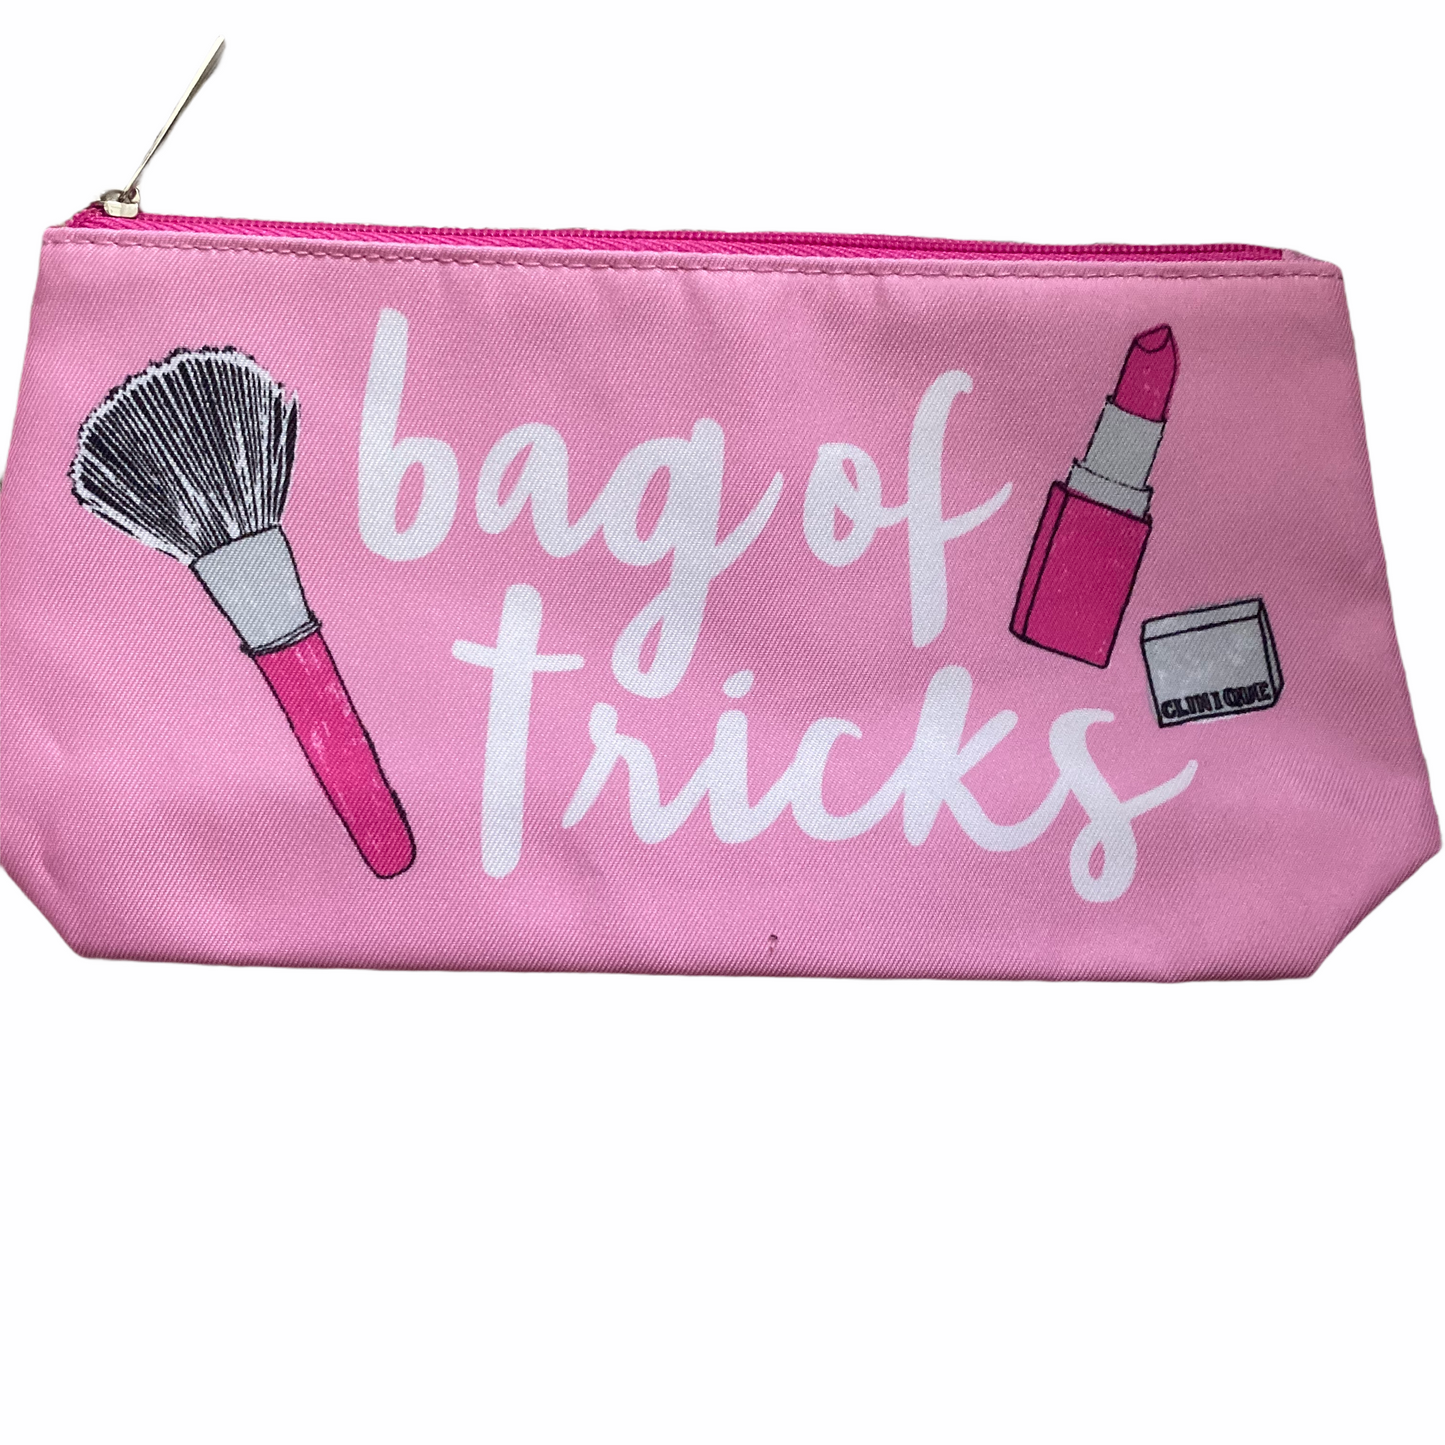 Bag of Tricks Makeup Bag